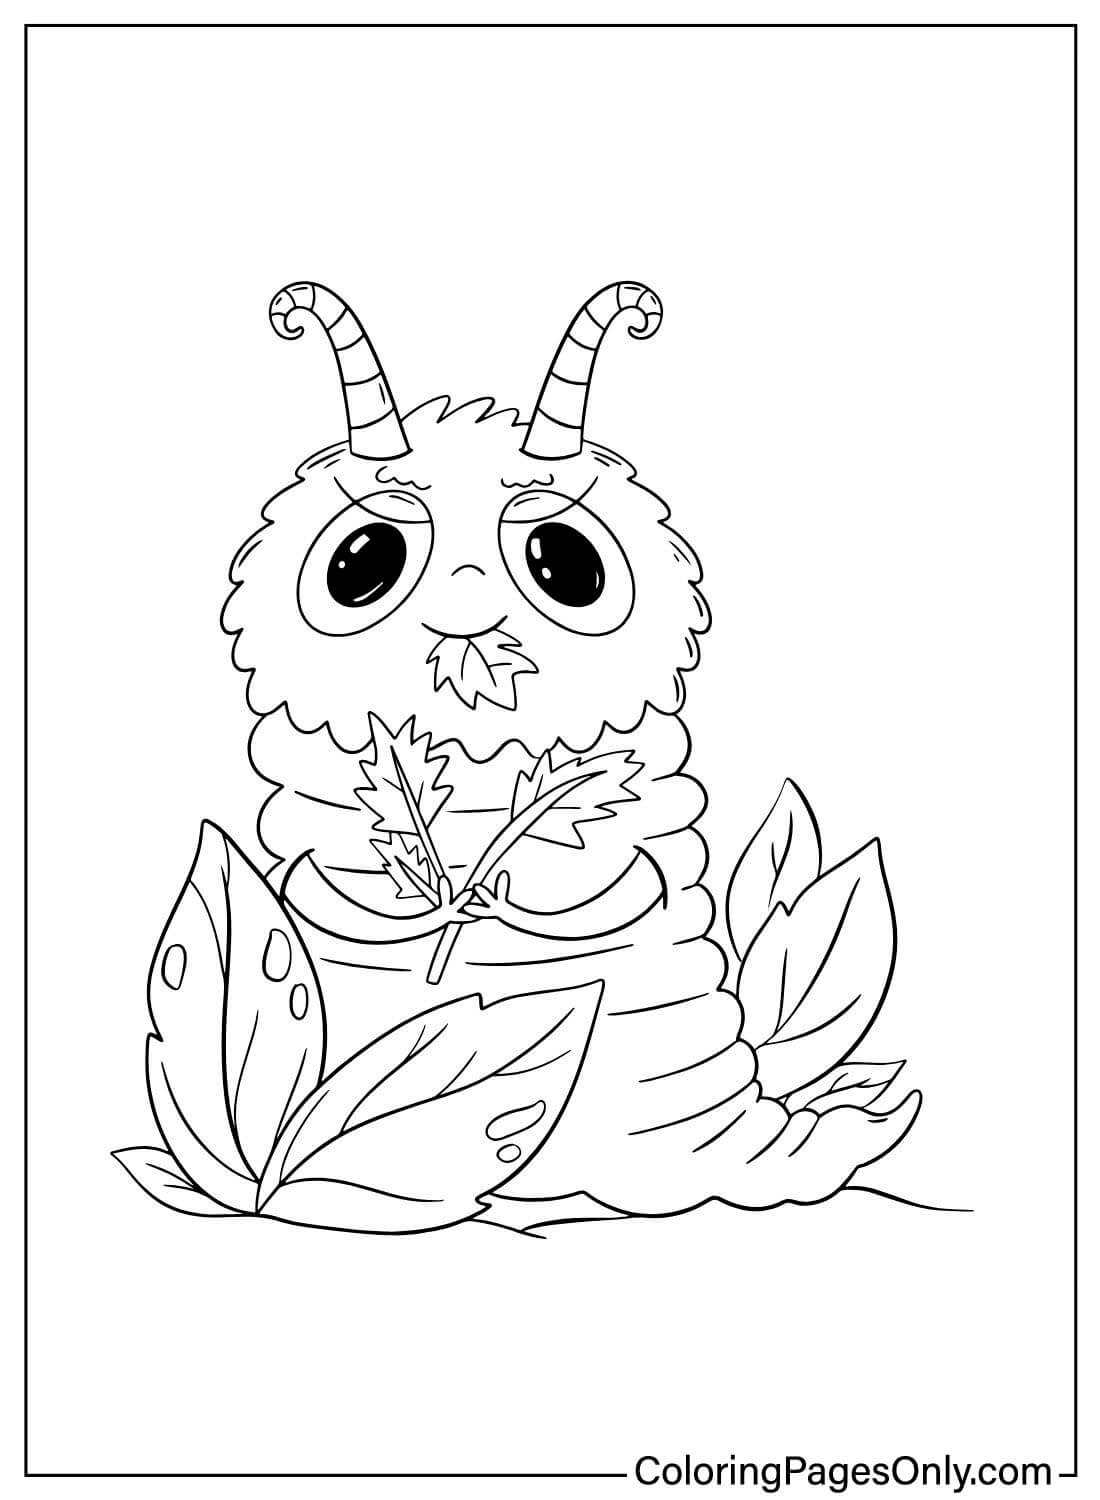 Página para colorir da Caterpillar para impressão da Caterpillar